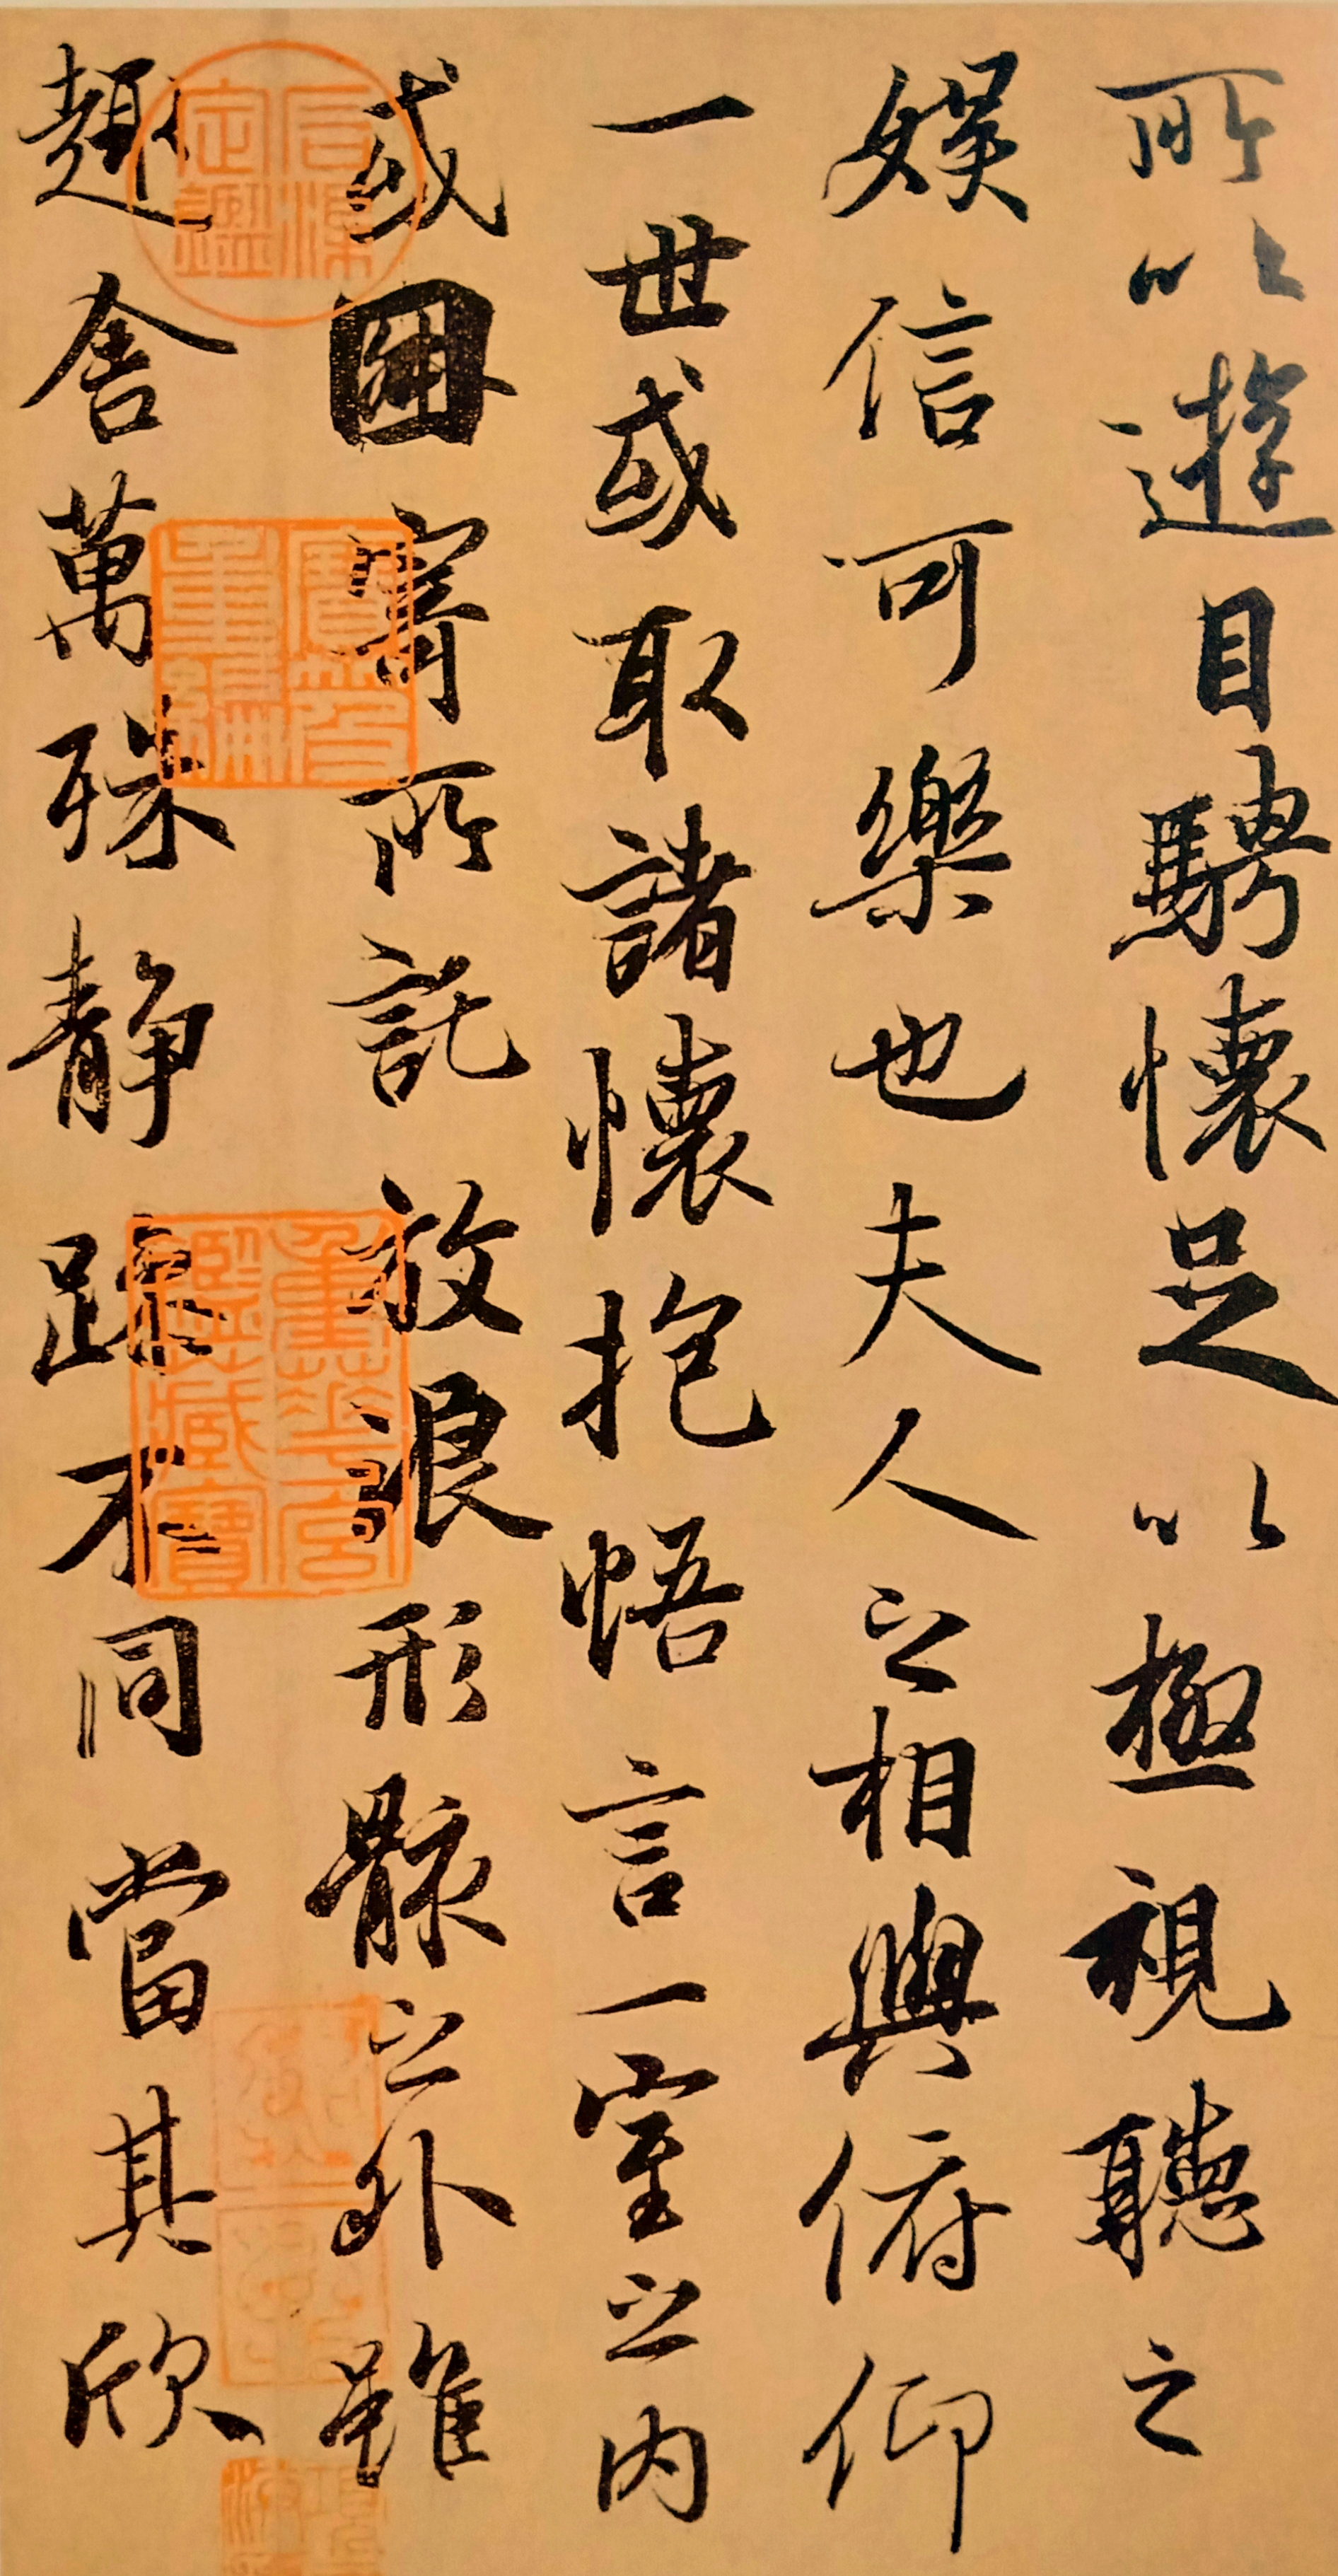 浅议王羲之行书作品《兰亭序》中存在的楷书笔画与楷意字体